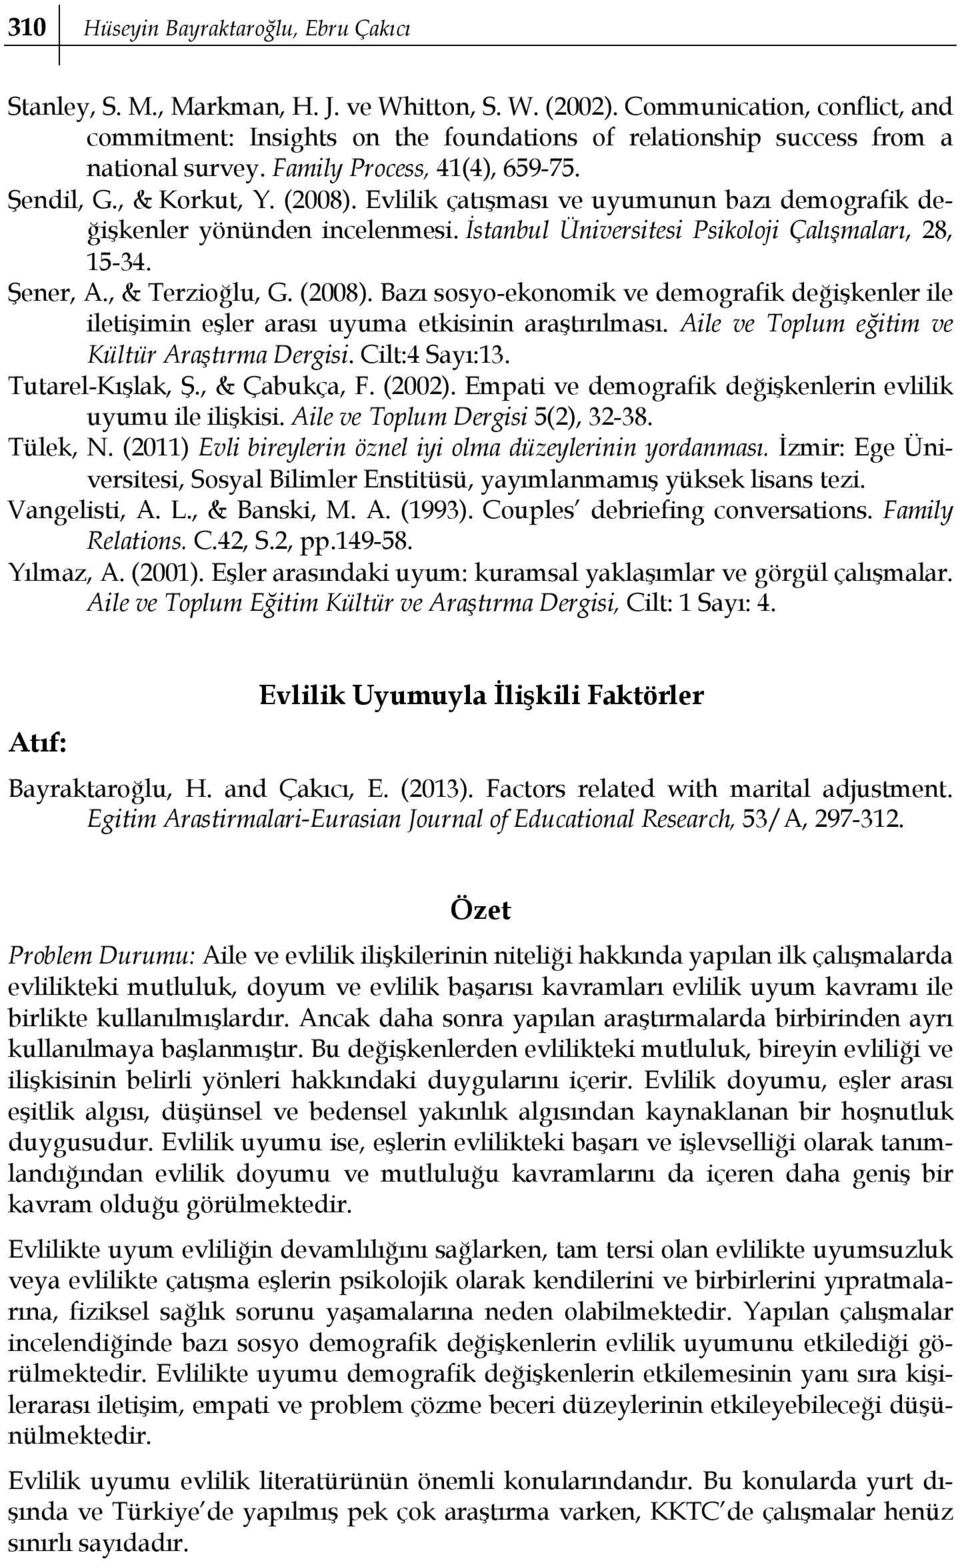 Evlilik çatışması ve uyumunun bazı demografik değişkenler yönünden incelenmesi. İstanbul Üniversitesi Psikoloji Çalışmaları, 28, 15-34. Şener, A., & Terzioğlu, G. (2008).